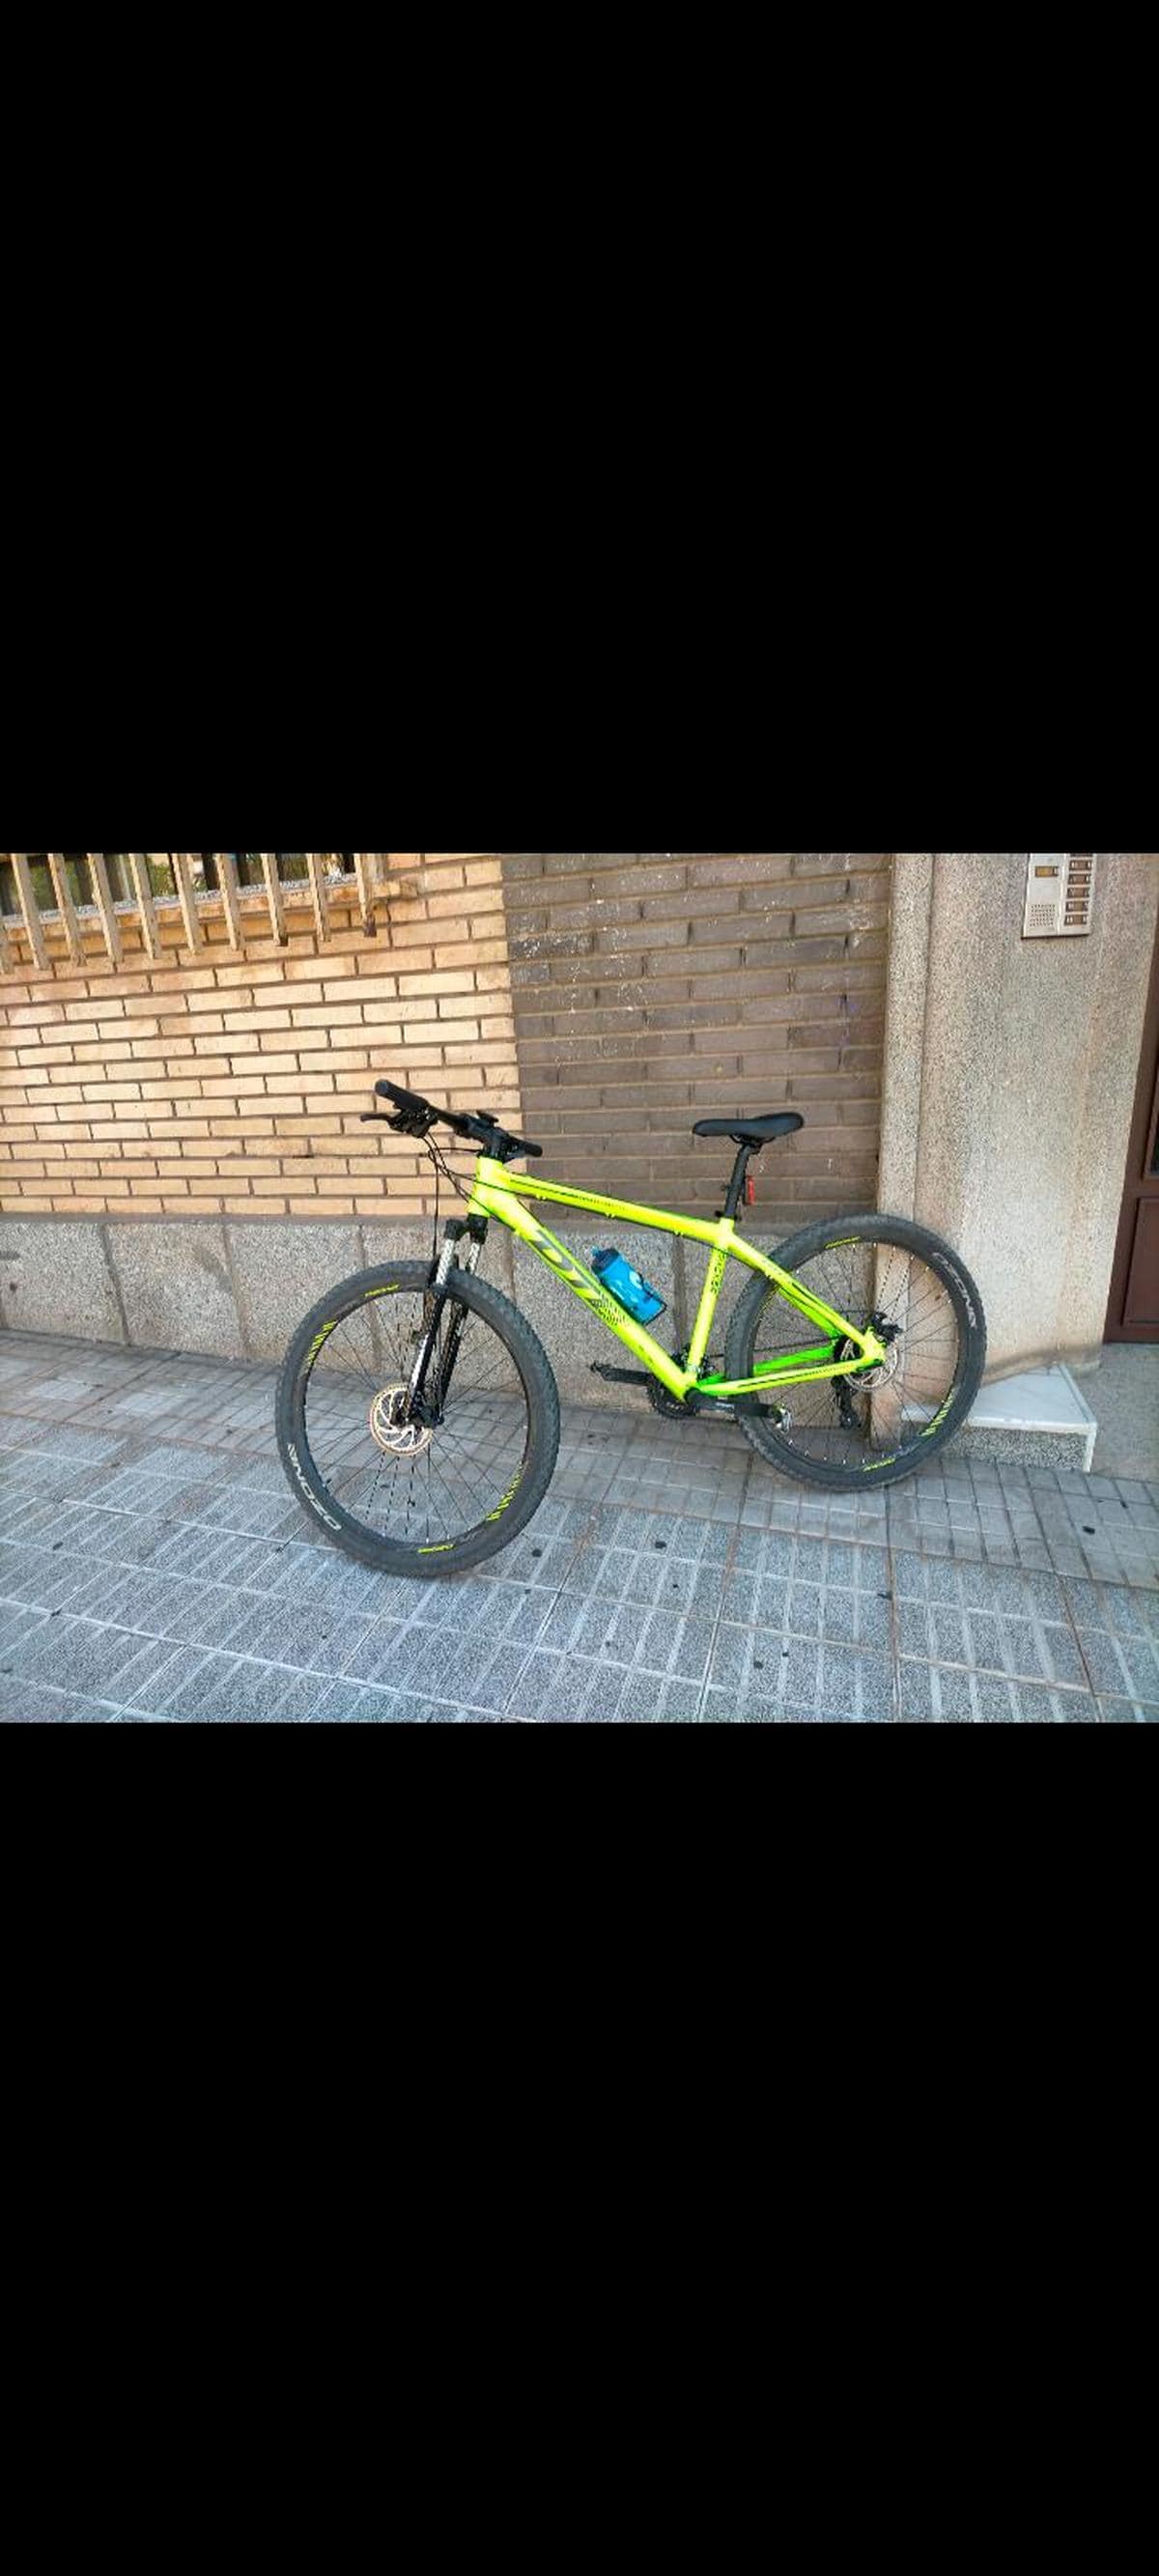 La bicicleta sustraída es de color amarillo verdoso y de la marca DTB